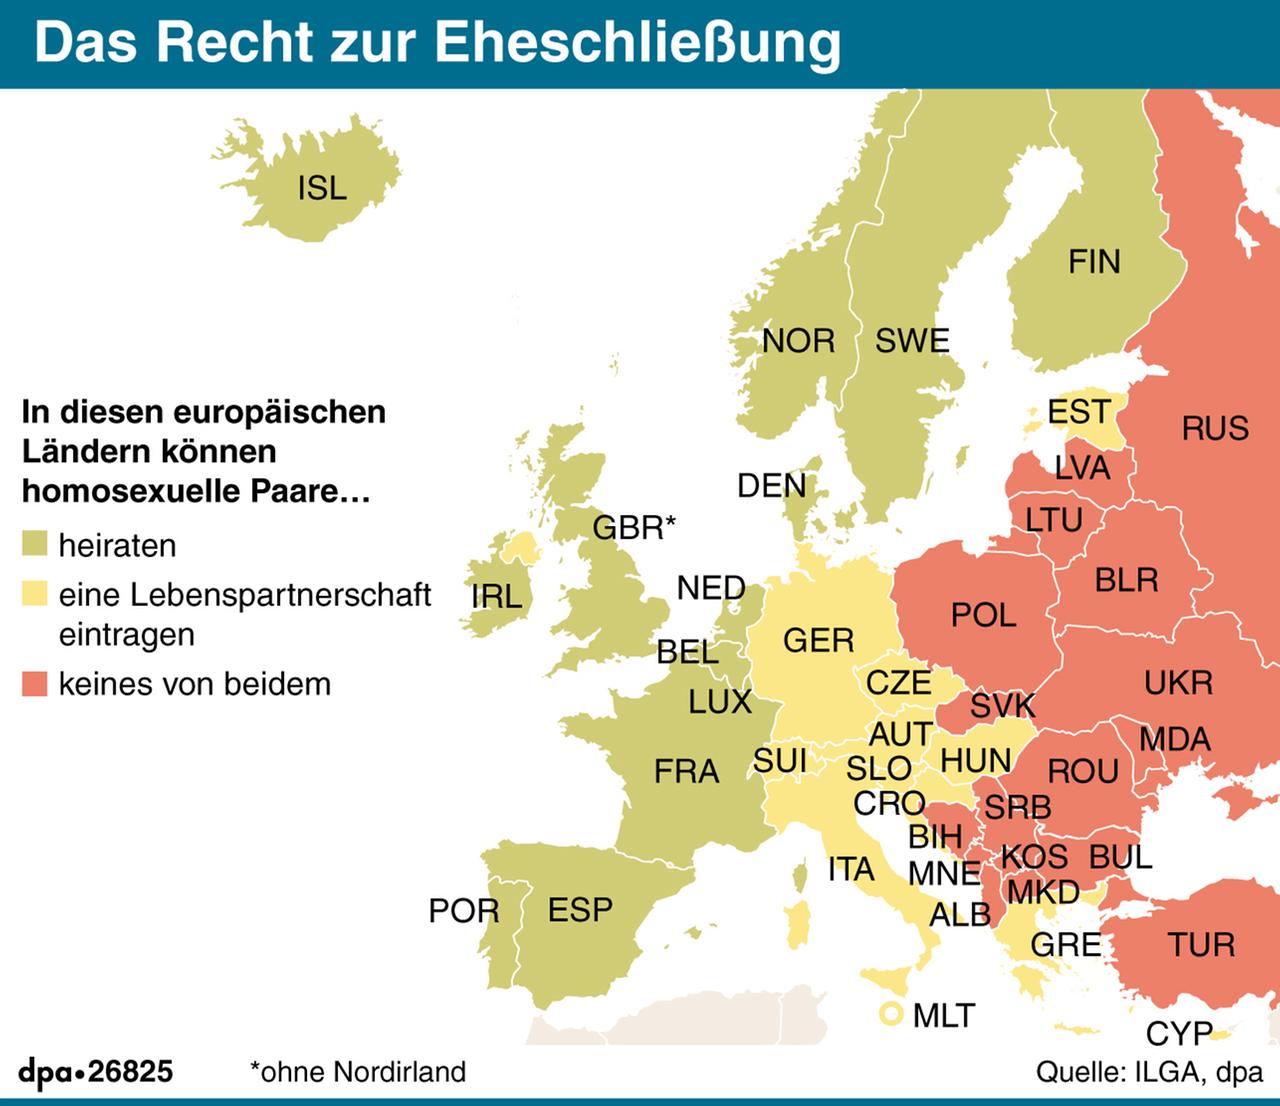 PD-Kanzlerkandidat Martin Schulz will drei Monate vor der Bundestagswahl ein Ja zur Ehe für alle erzwingen und fordert damit seine Kontrahentin Angela Merkel (CDU) heraus. Die SPD werde auf jeden Fall dafür sorgen, dass noch in dieser Woche eine Abstimmung über einen entsprechenden Gesetzentwurf des Bundesrats stattfinden werde, sagte Schulz am Dienstag in Berlin. Er hoffe, dass die Union noch mitziehe. Karte mit den Rechten zur Eheschließung homosexueller Paare in Europa, Querformat 110 x 95 mm, Grafik: A. Brühl, Redaktion: J. Schneider